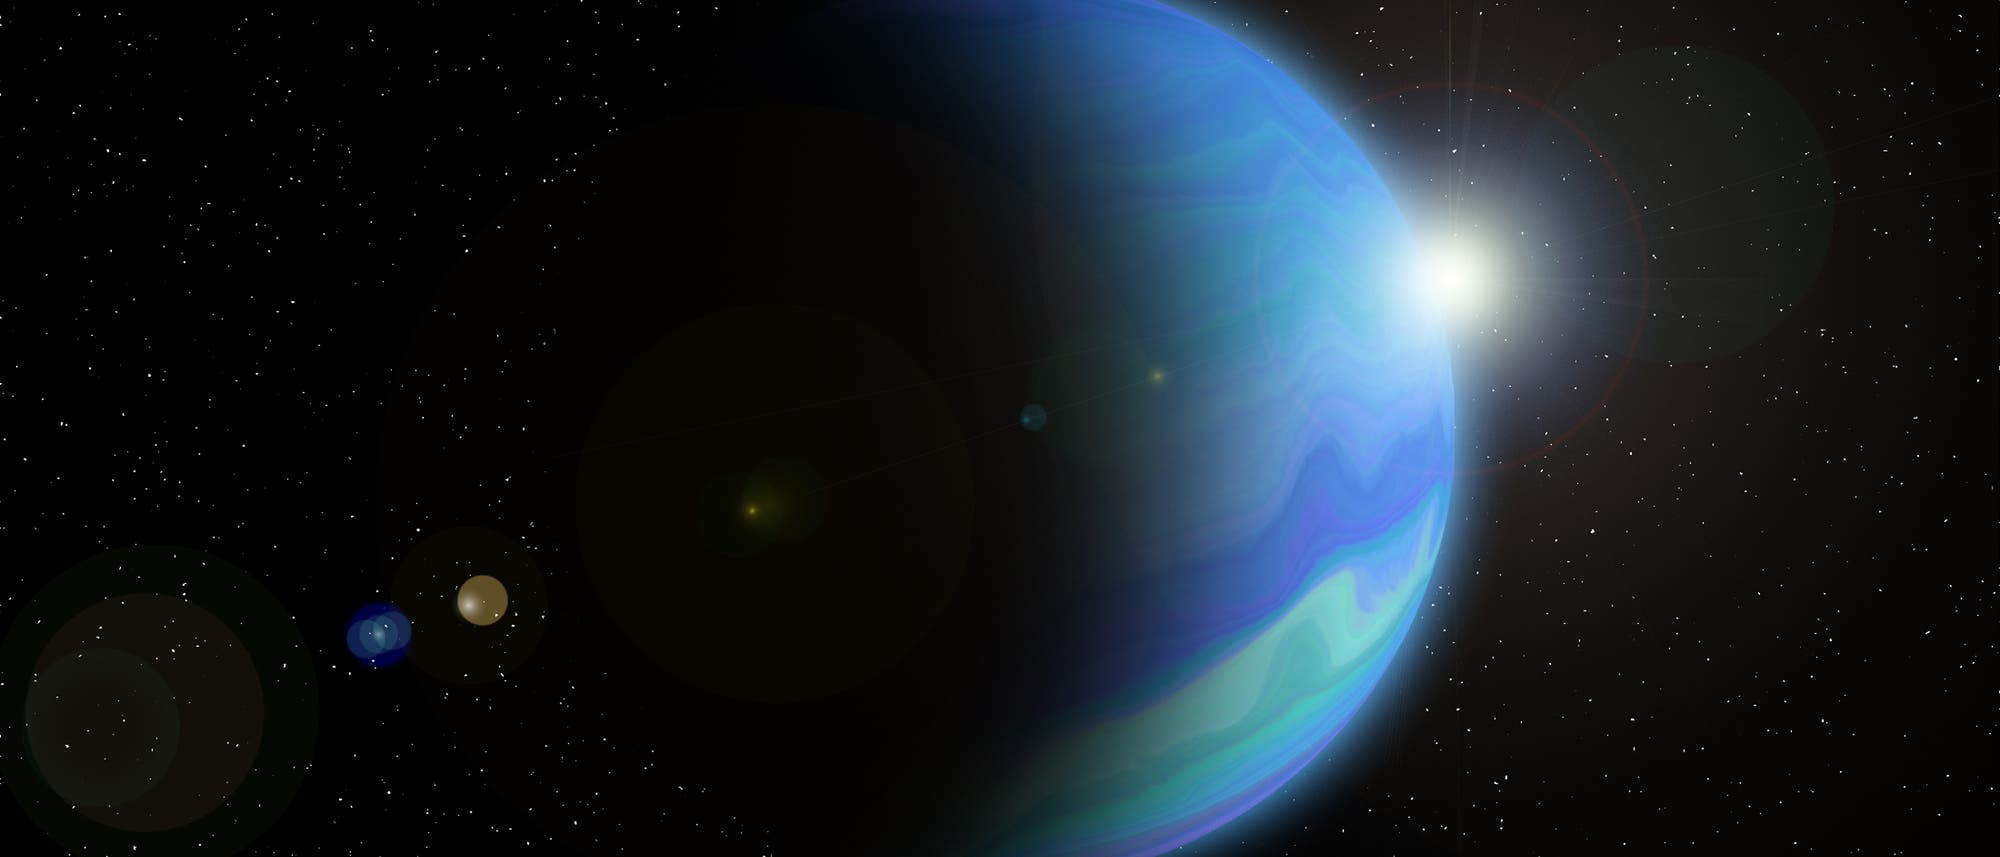 Der äußerste Planet Neptun wurde im Jahr 1846 von Johann Gottfried Galle von Berlin aus entdeckt.